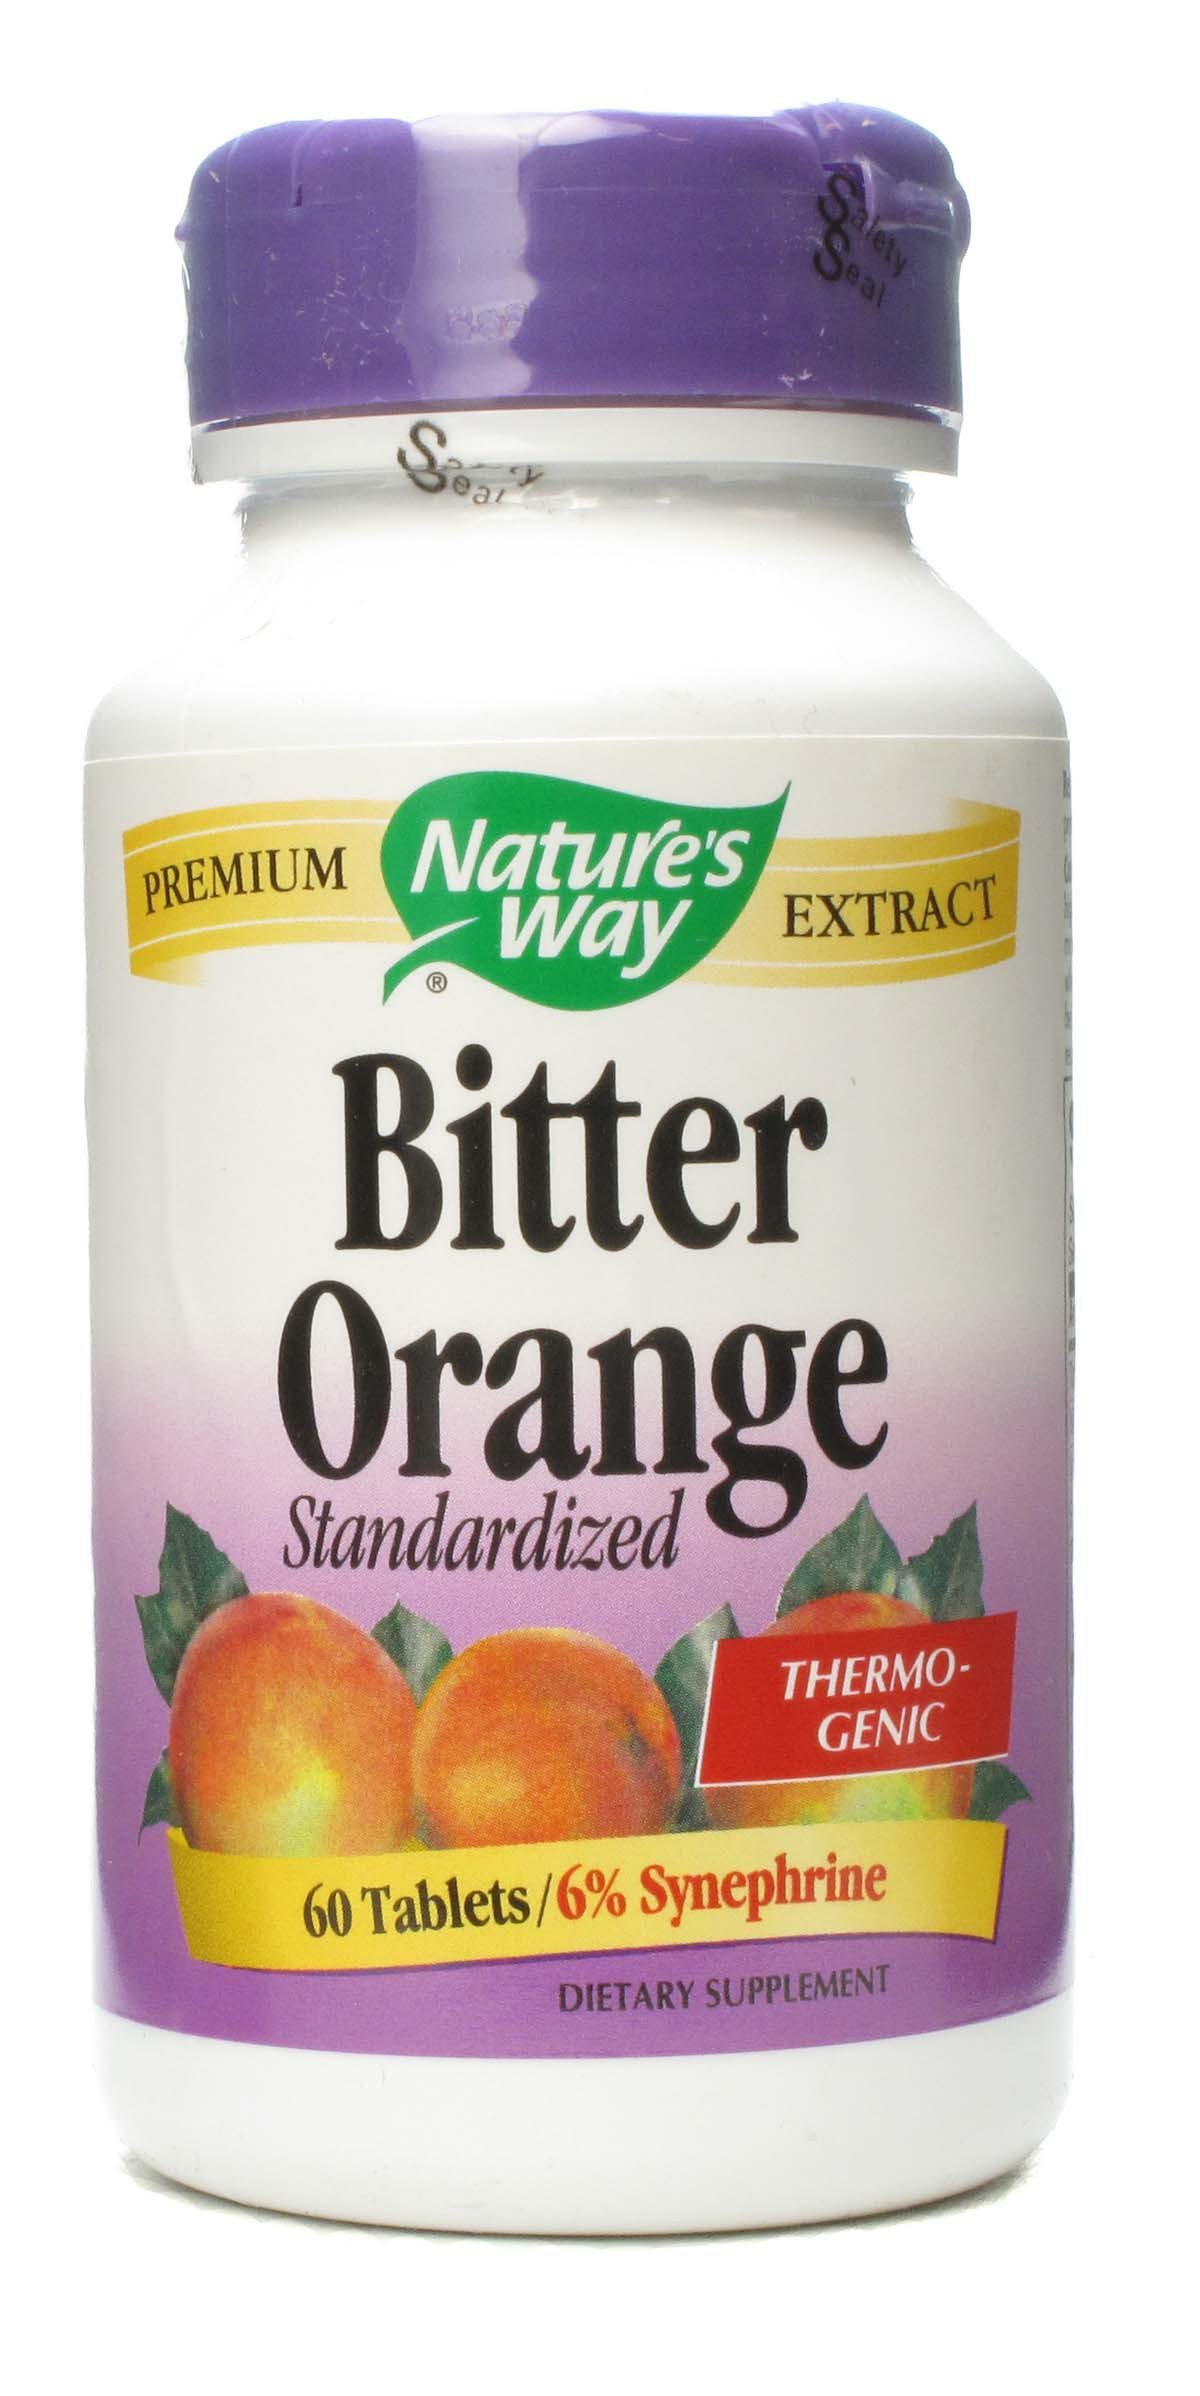 Bitter orange extract